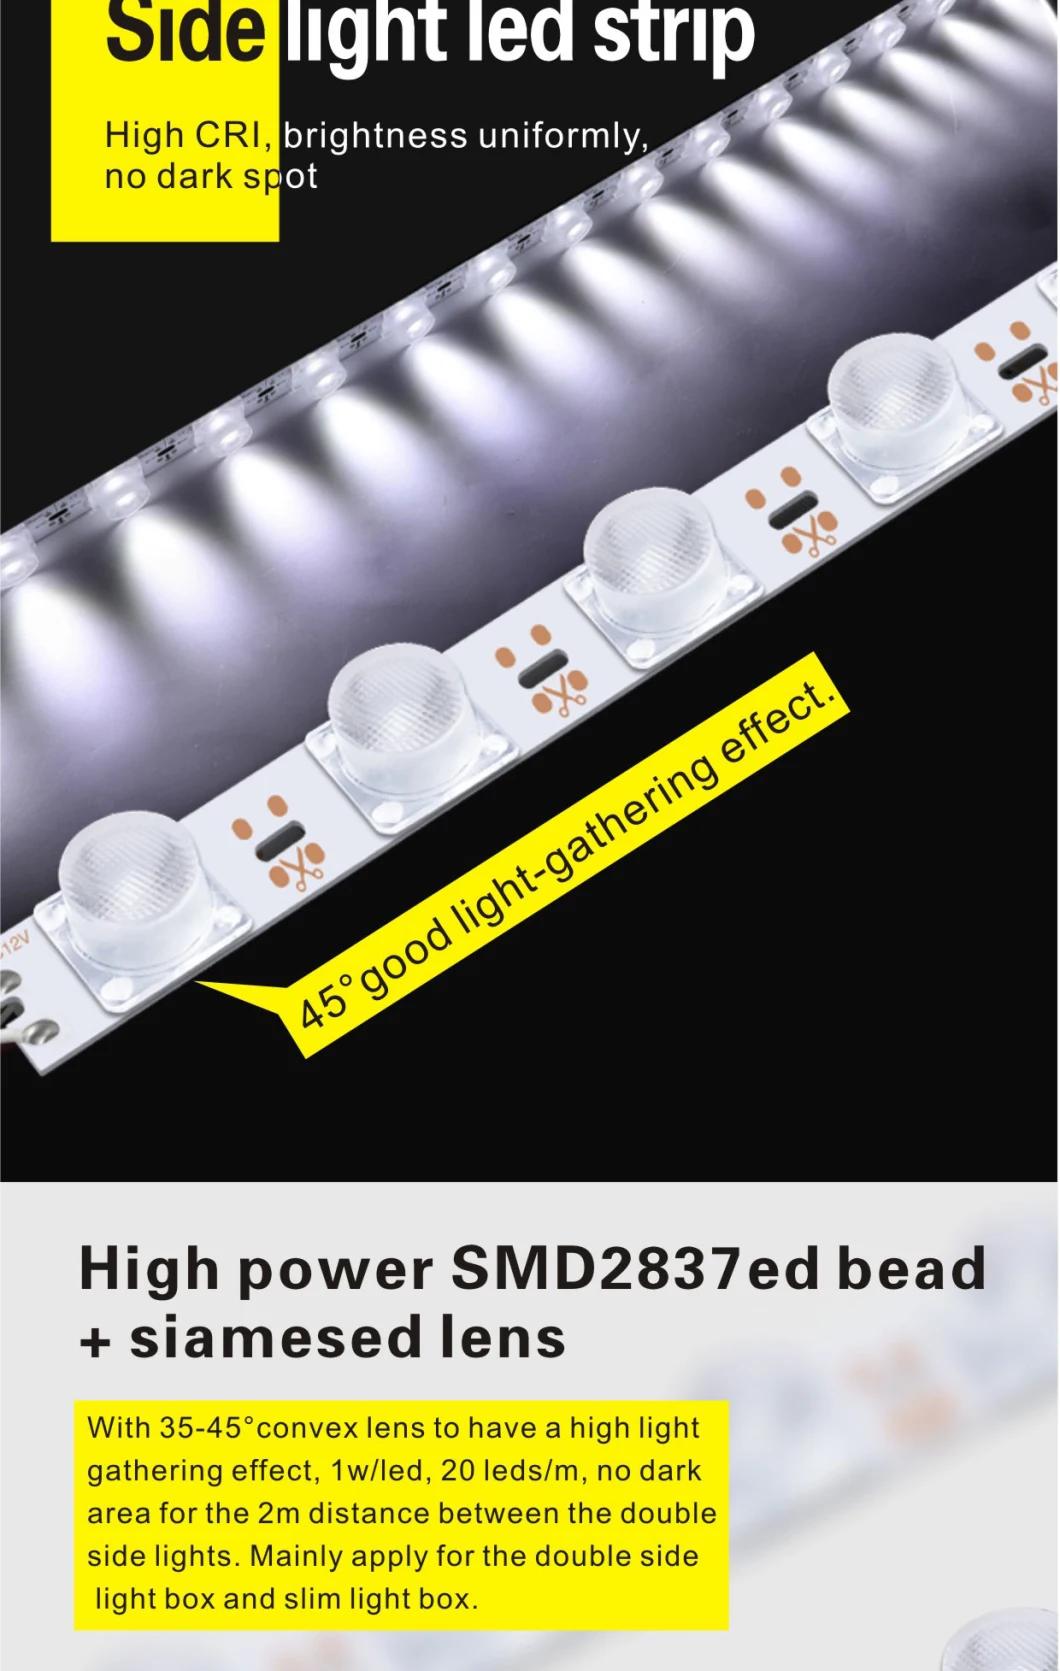 Sidelight LED Strip Bar for Double Face Light Box 18LEDs